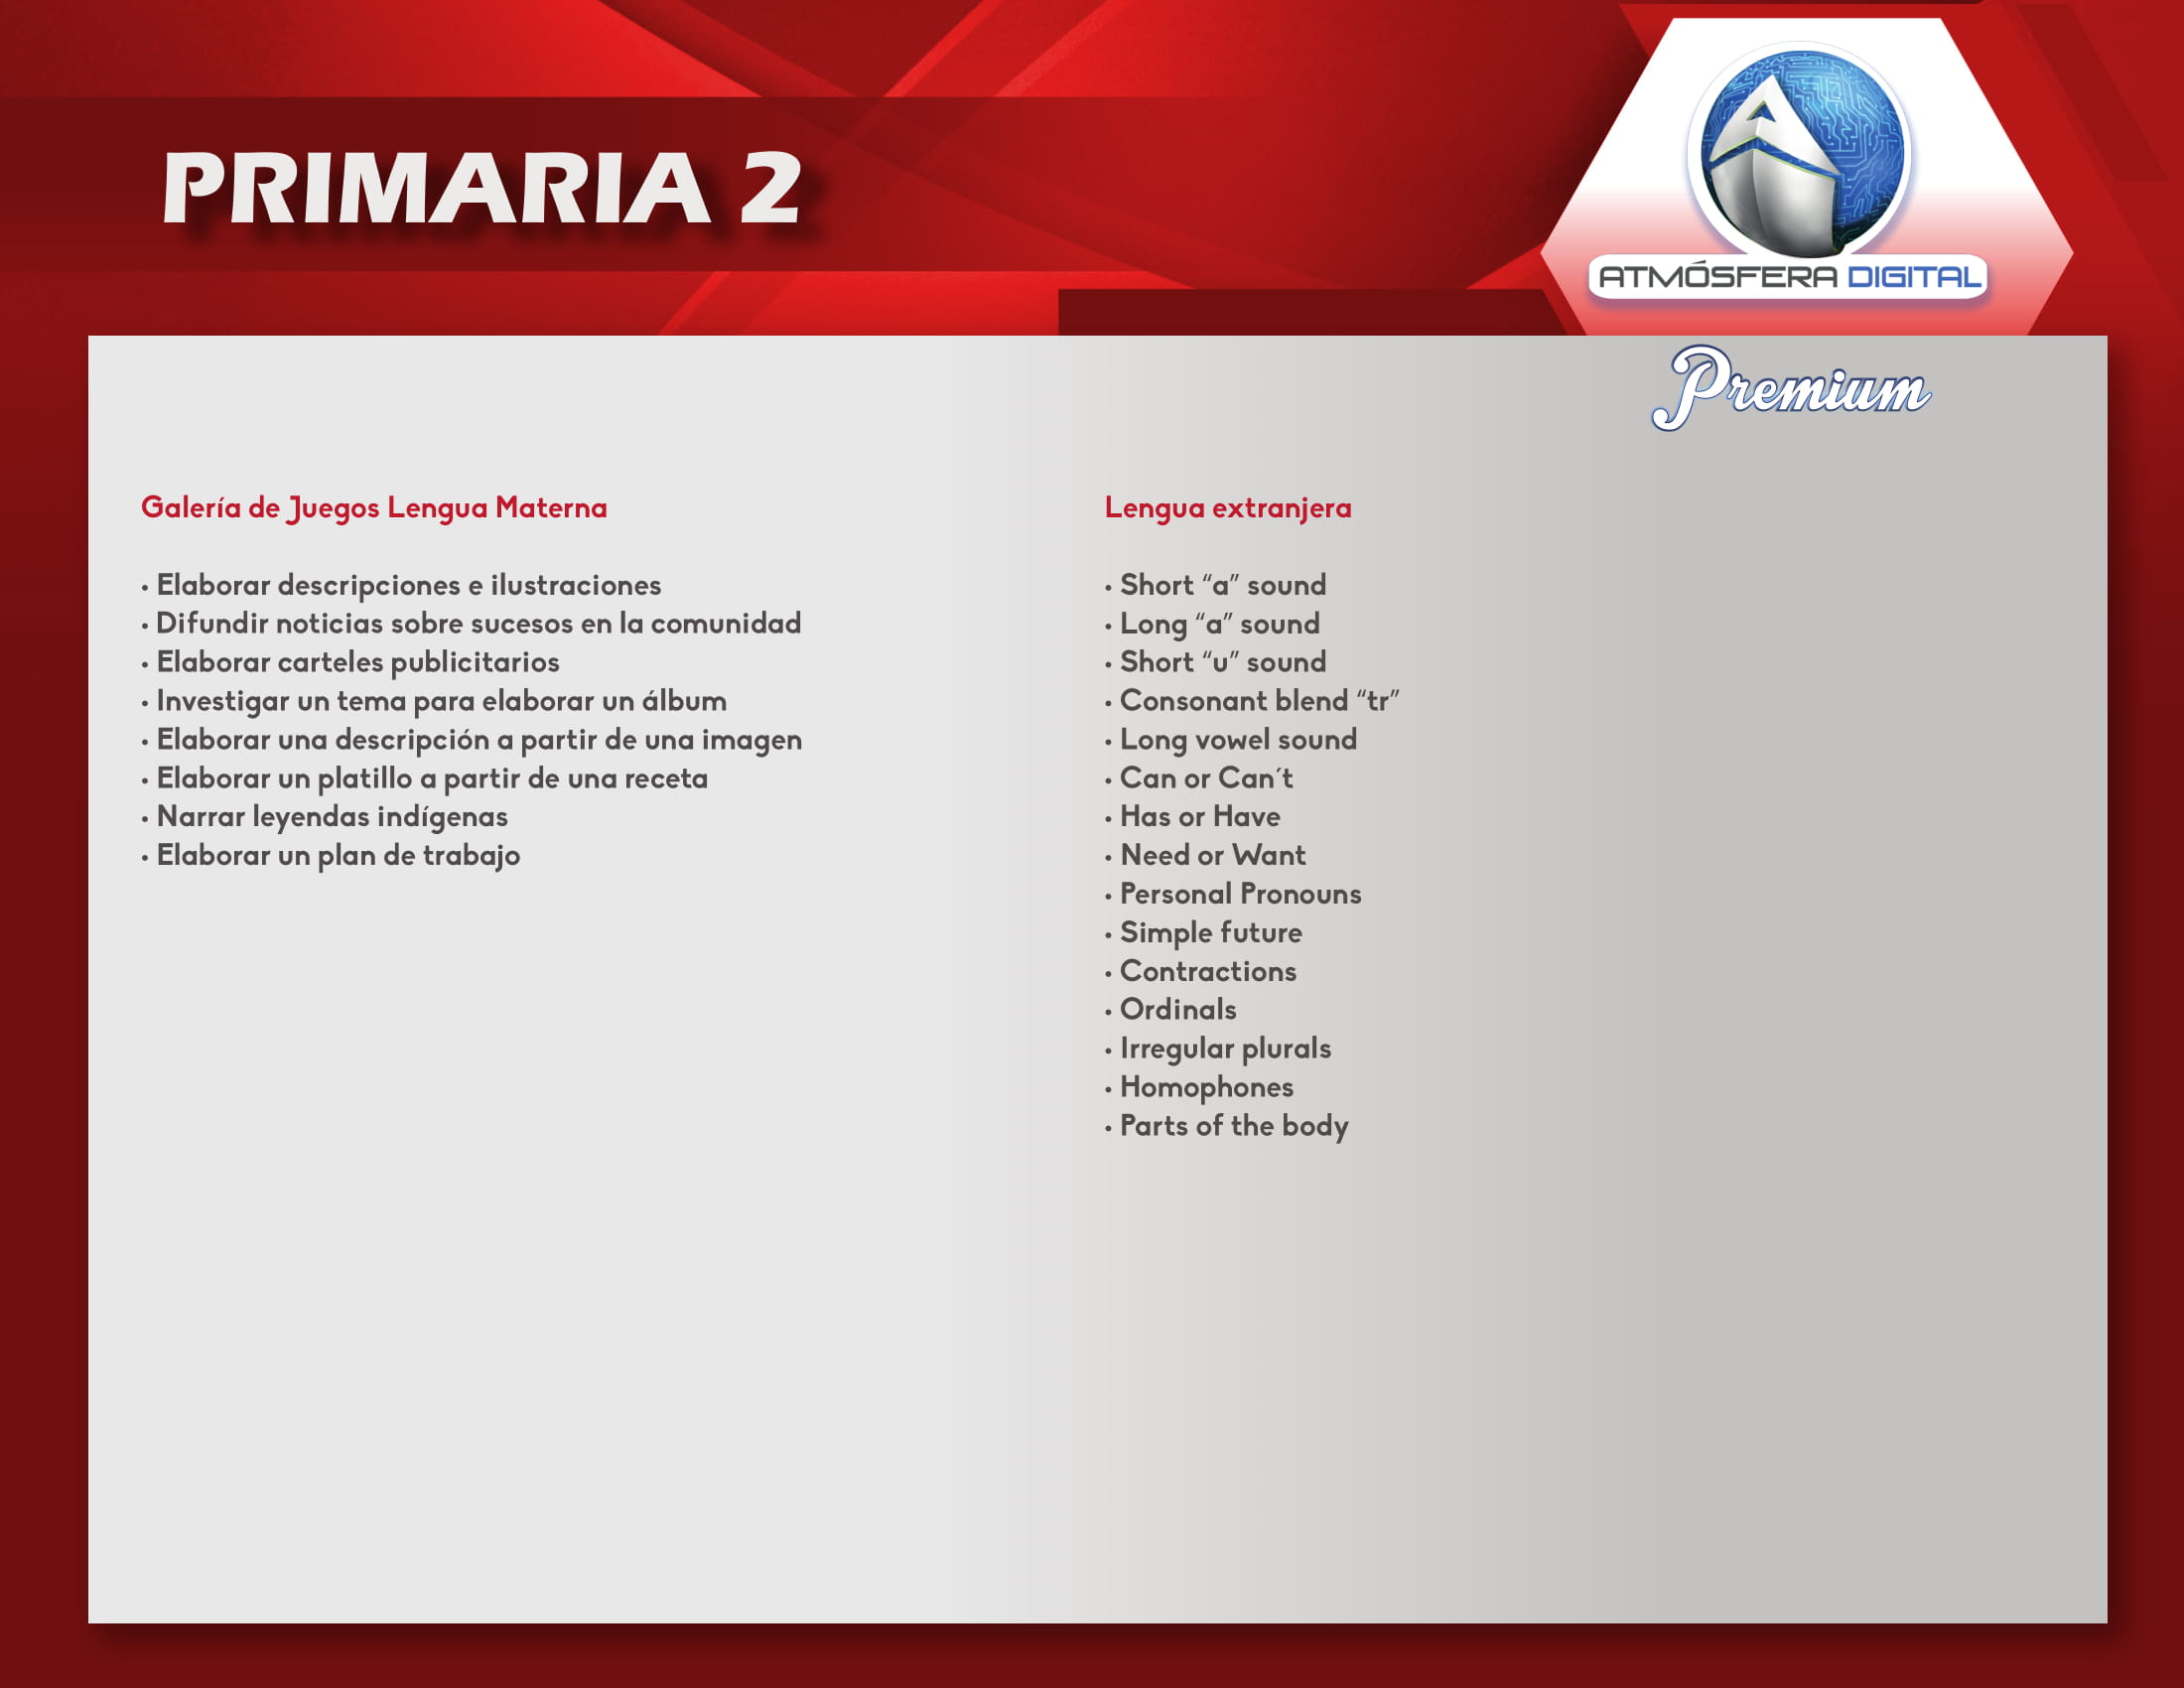 Temario Atmósfera Digital Premium – Primaria